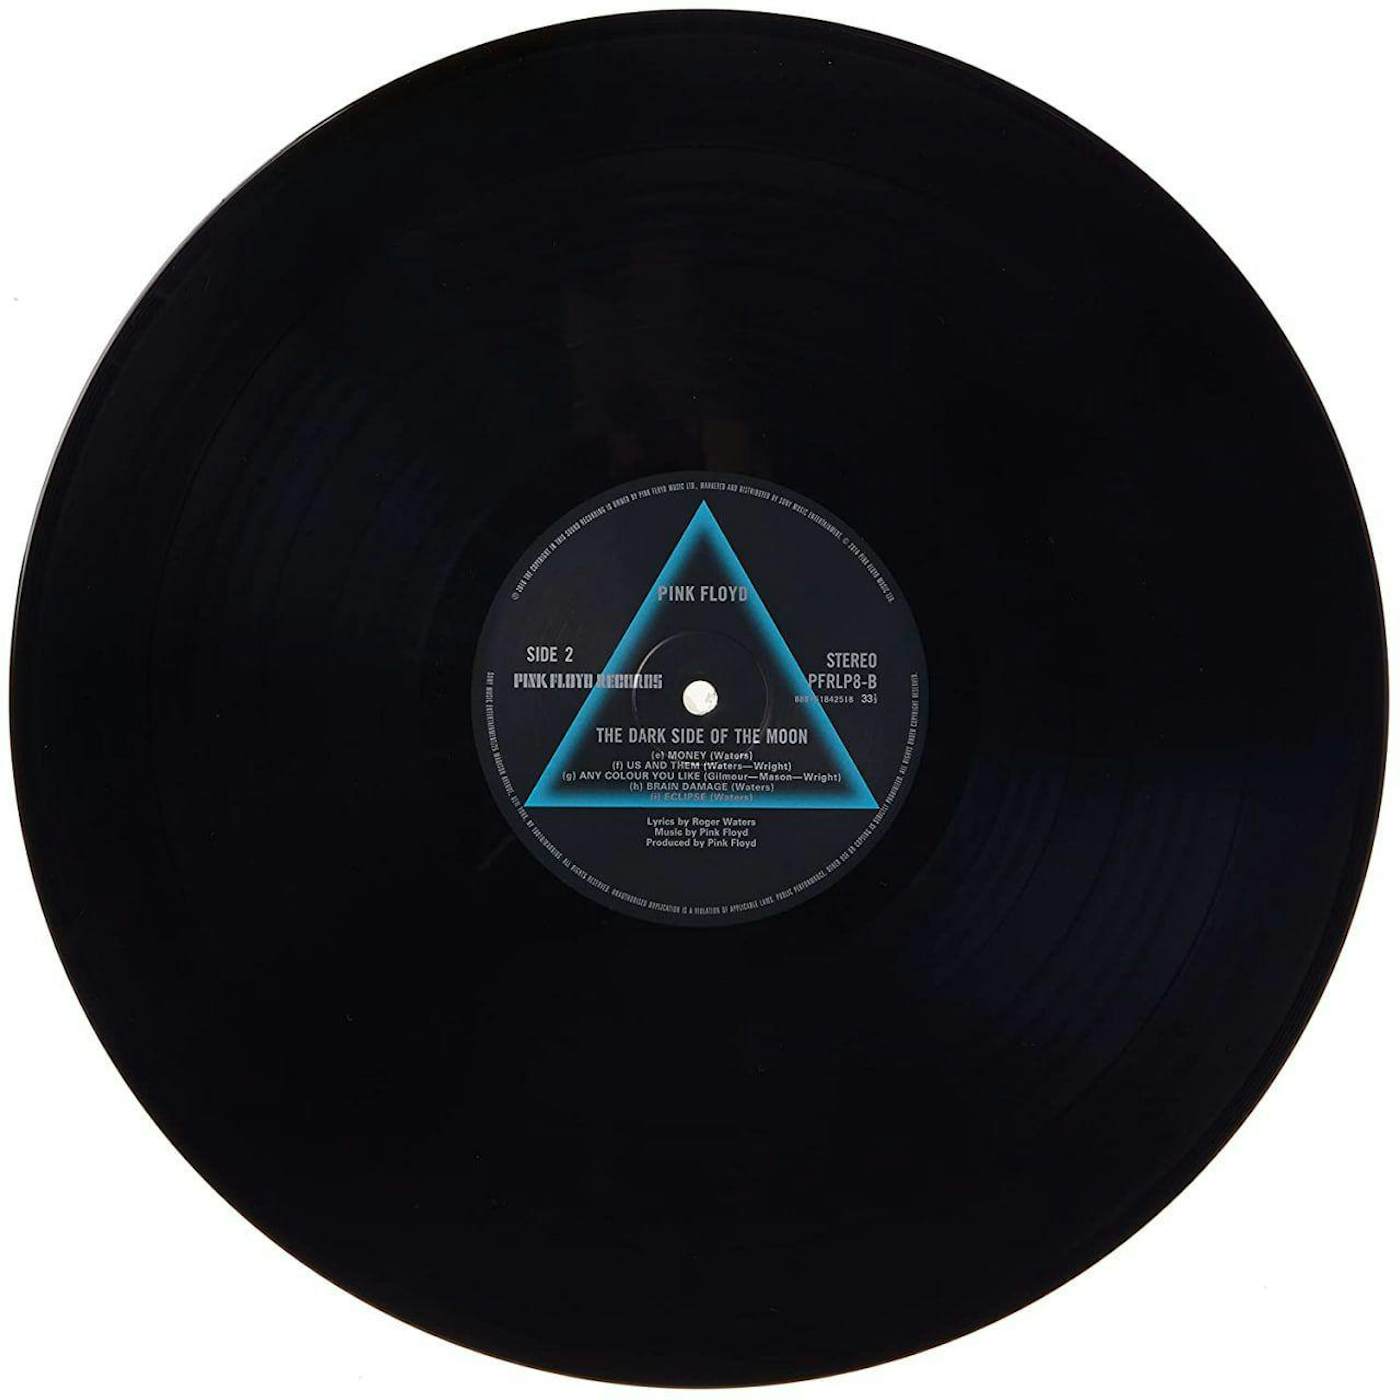 Pink Floyd - The Dark Side Of The Moon - Vinyl - Lp -nuevo